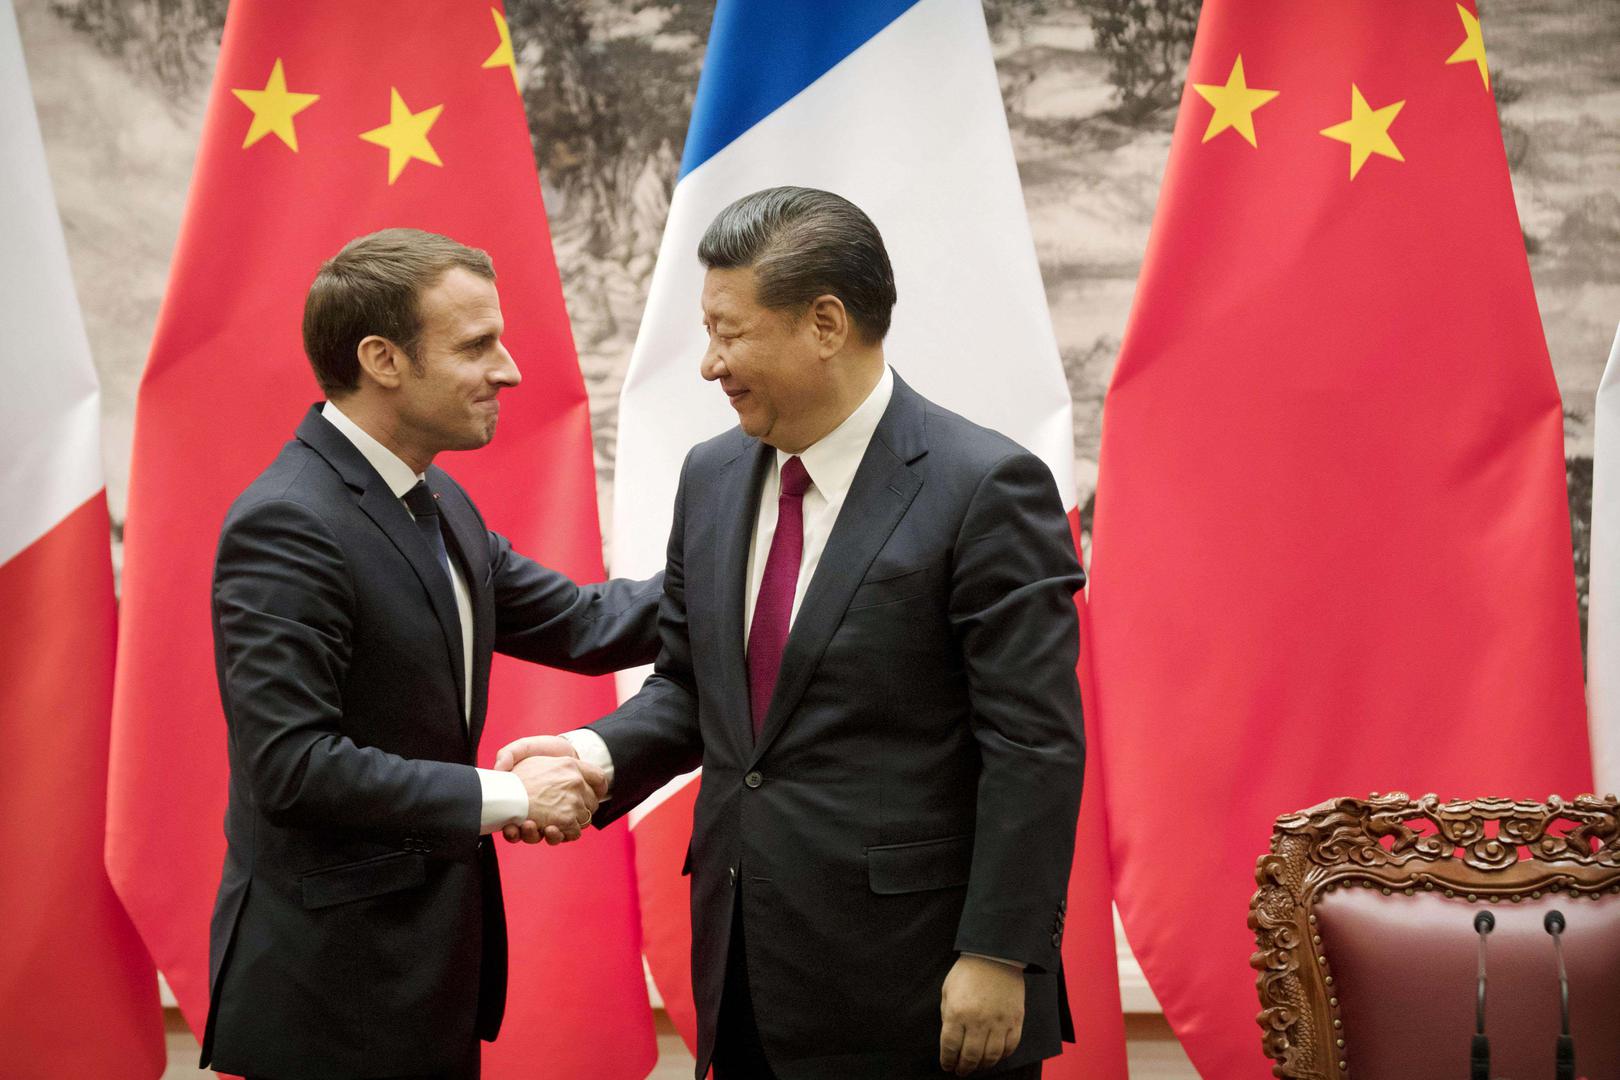 Le président français Emmanuel Macron et le président chinois Xi Jinping se serrent la main après leur conférence de presse conjointe au Palais du Peuple à Pékin, le 9 janvier 2018.  © 2018 Kyodo via AP Images